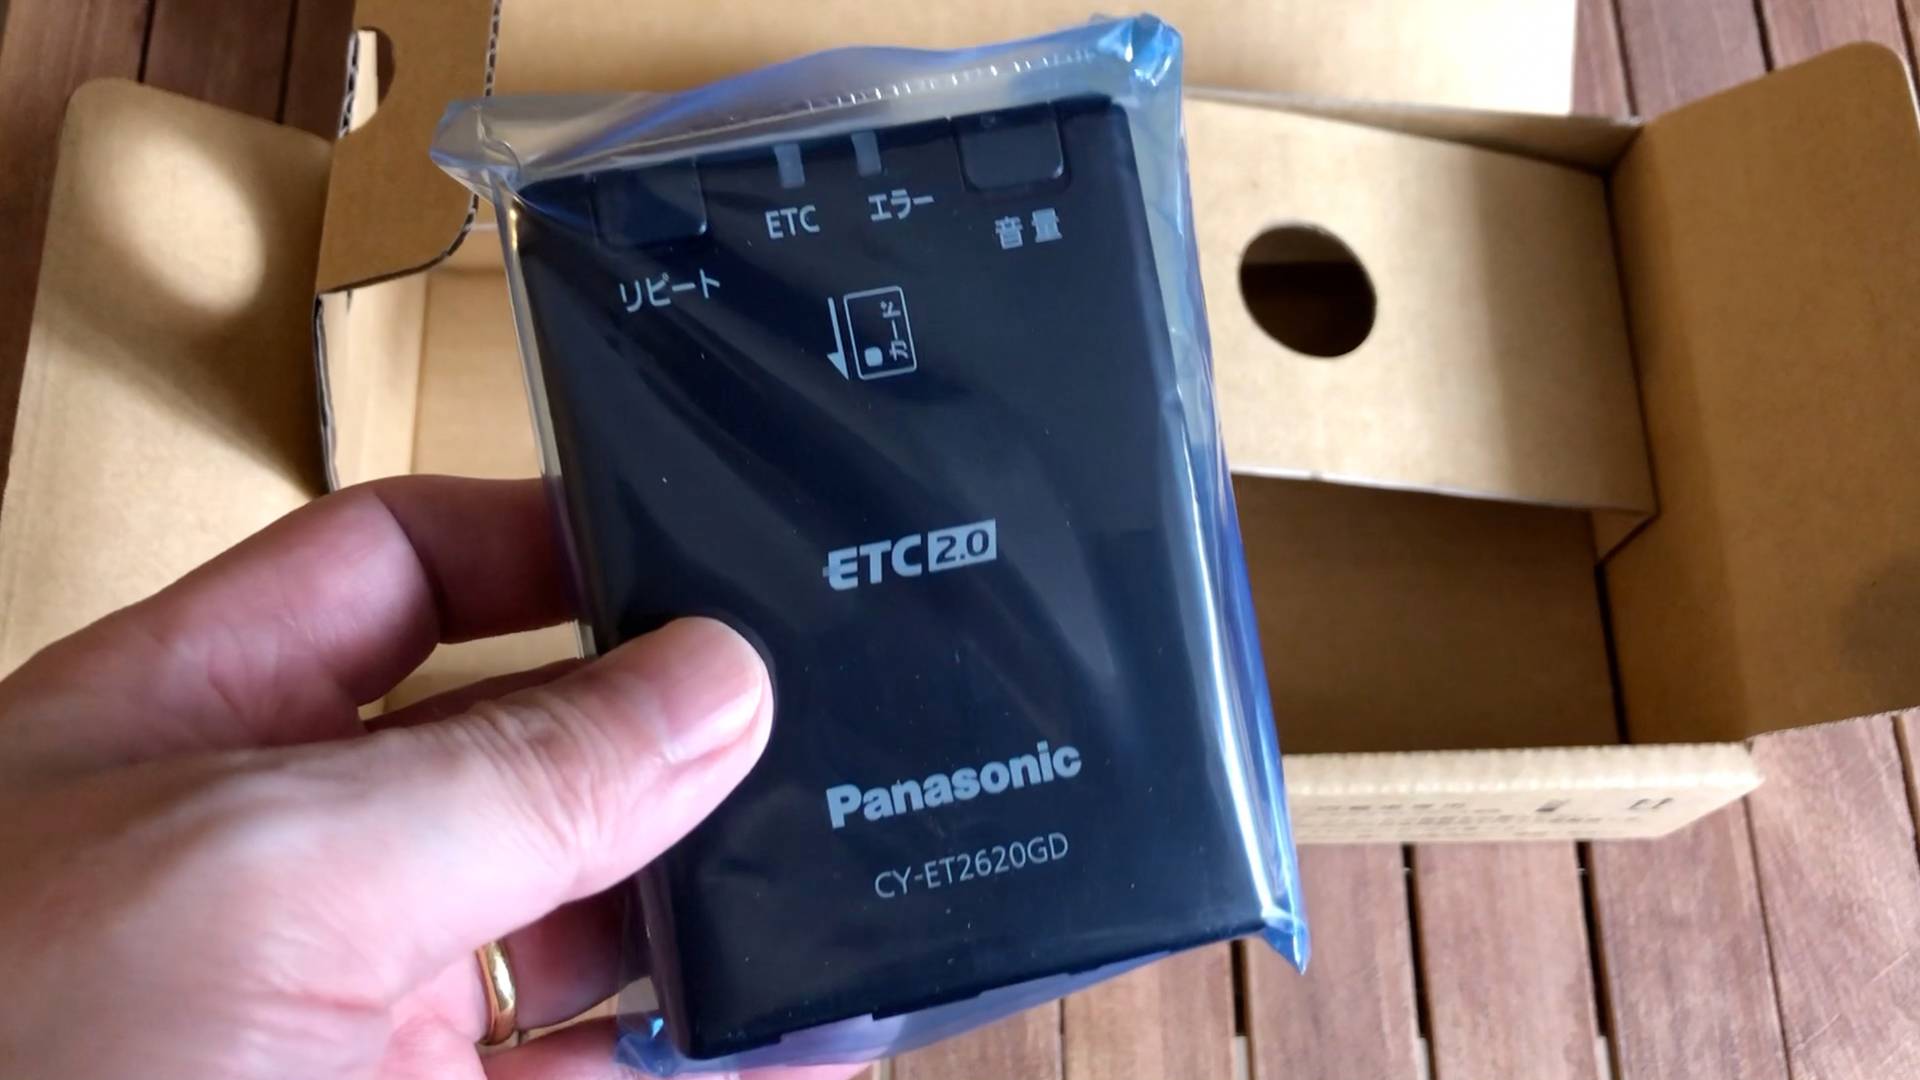 【軽バンカスタマイズ3】Panasonic CY-ET2620GD 新セキュリティ対応アンテナ一体型ETC2.0をエブリイに取り付けました。